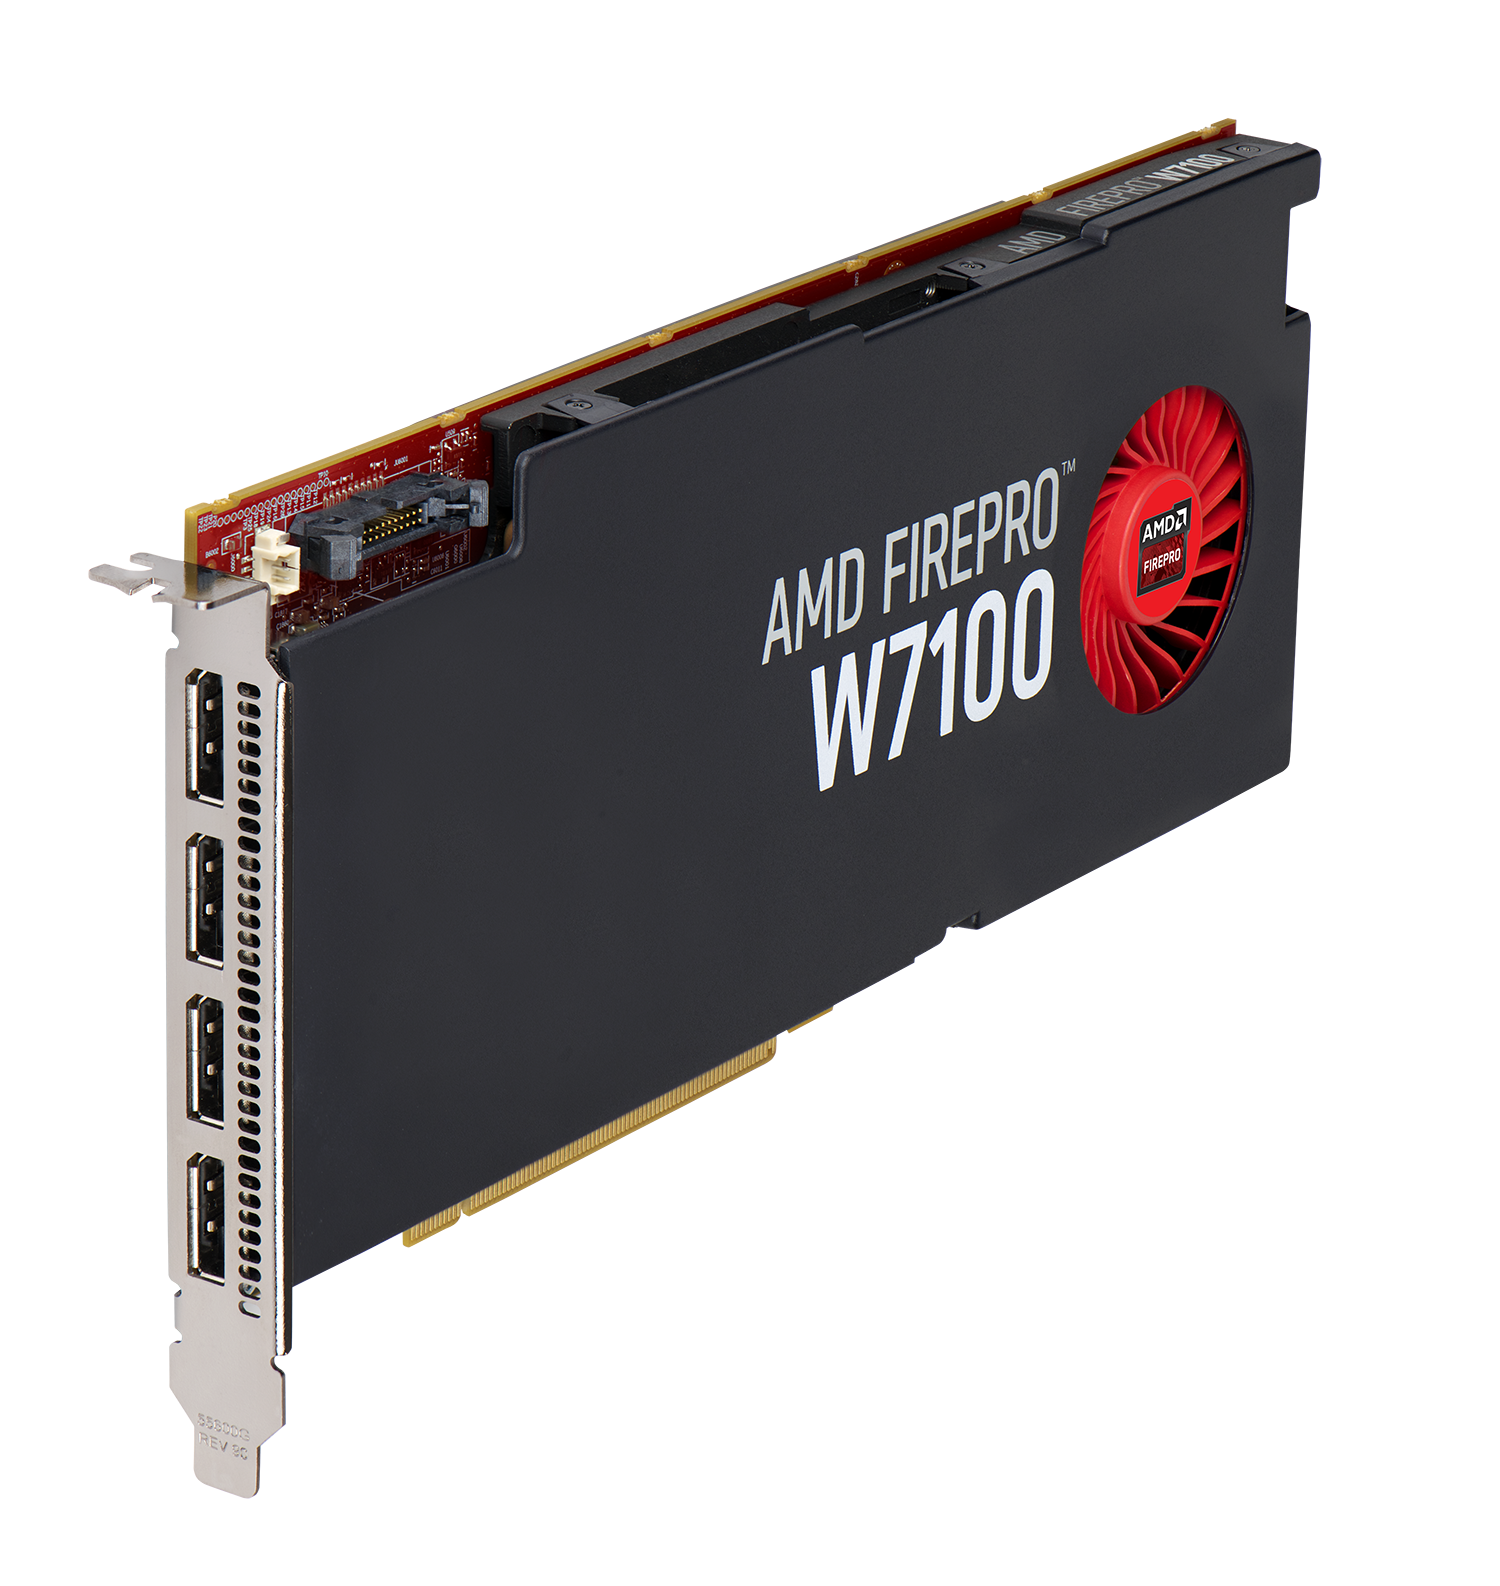 Immagine pubblicata in relazione al seguente contenuto: AMD annuncia le video card FirePro W7100, W5100, W4100 e W2100 | Nome immagine: news21488_AMD-FirePro-W7100_1.png